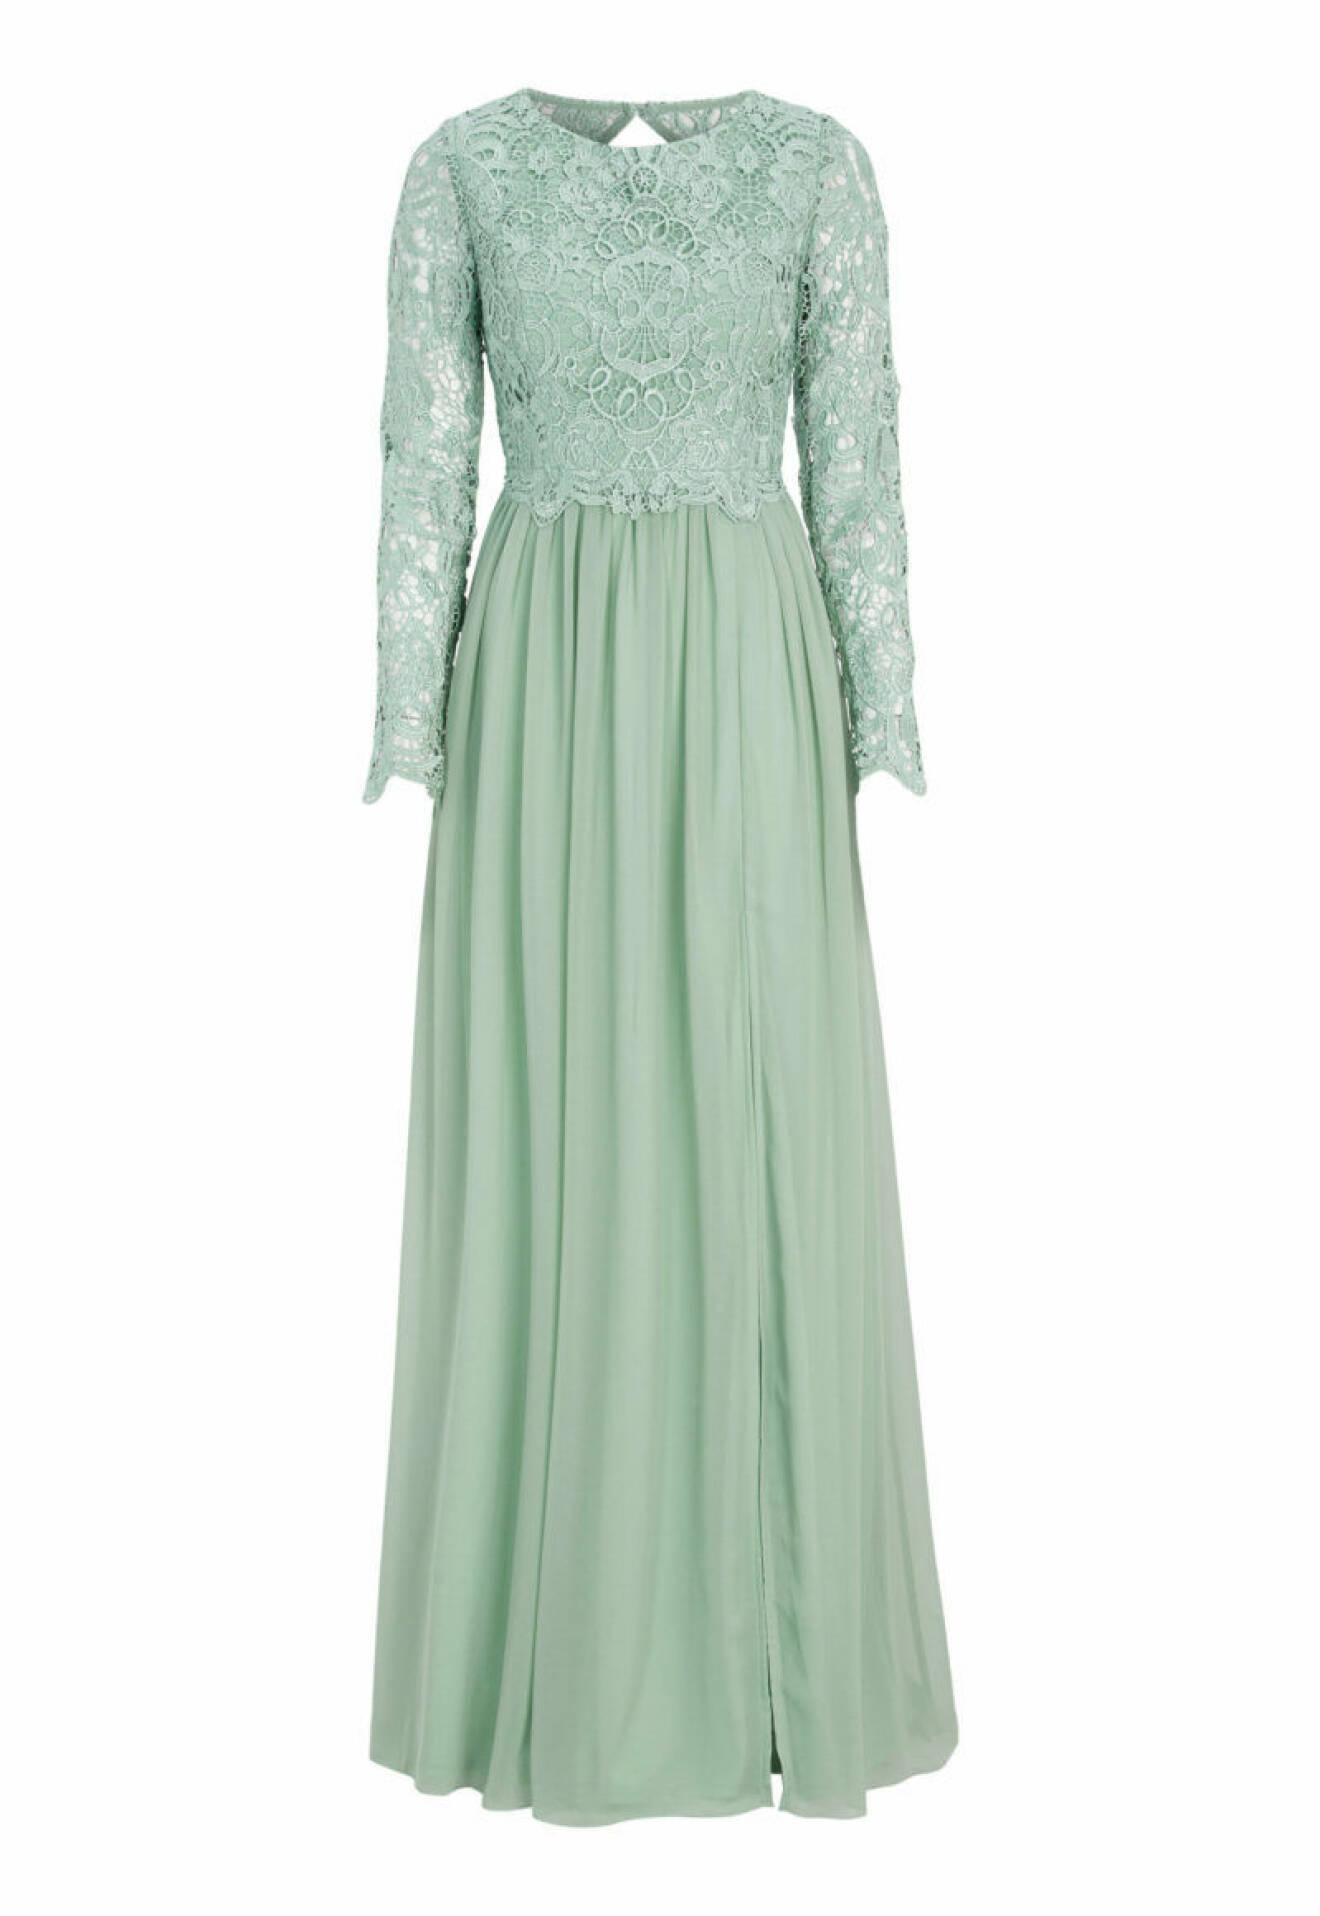 Ljusgrön klänning från Bubbelroom